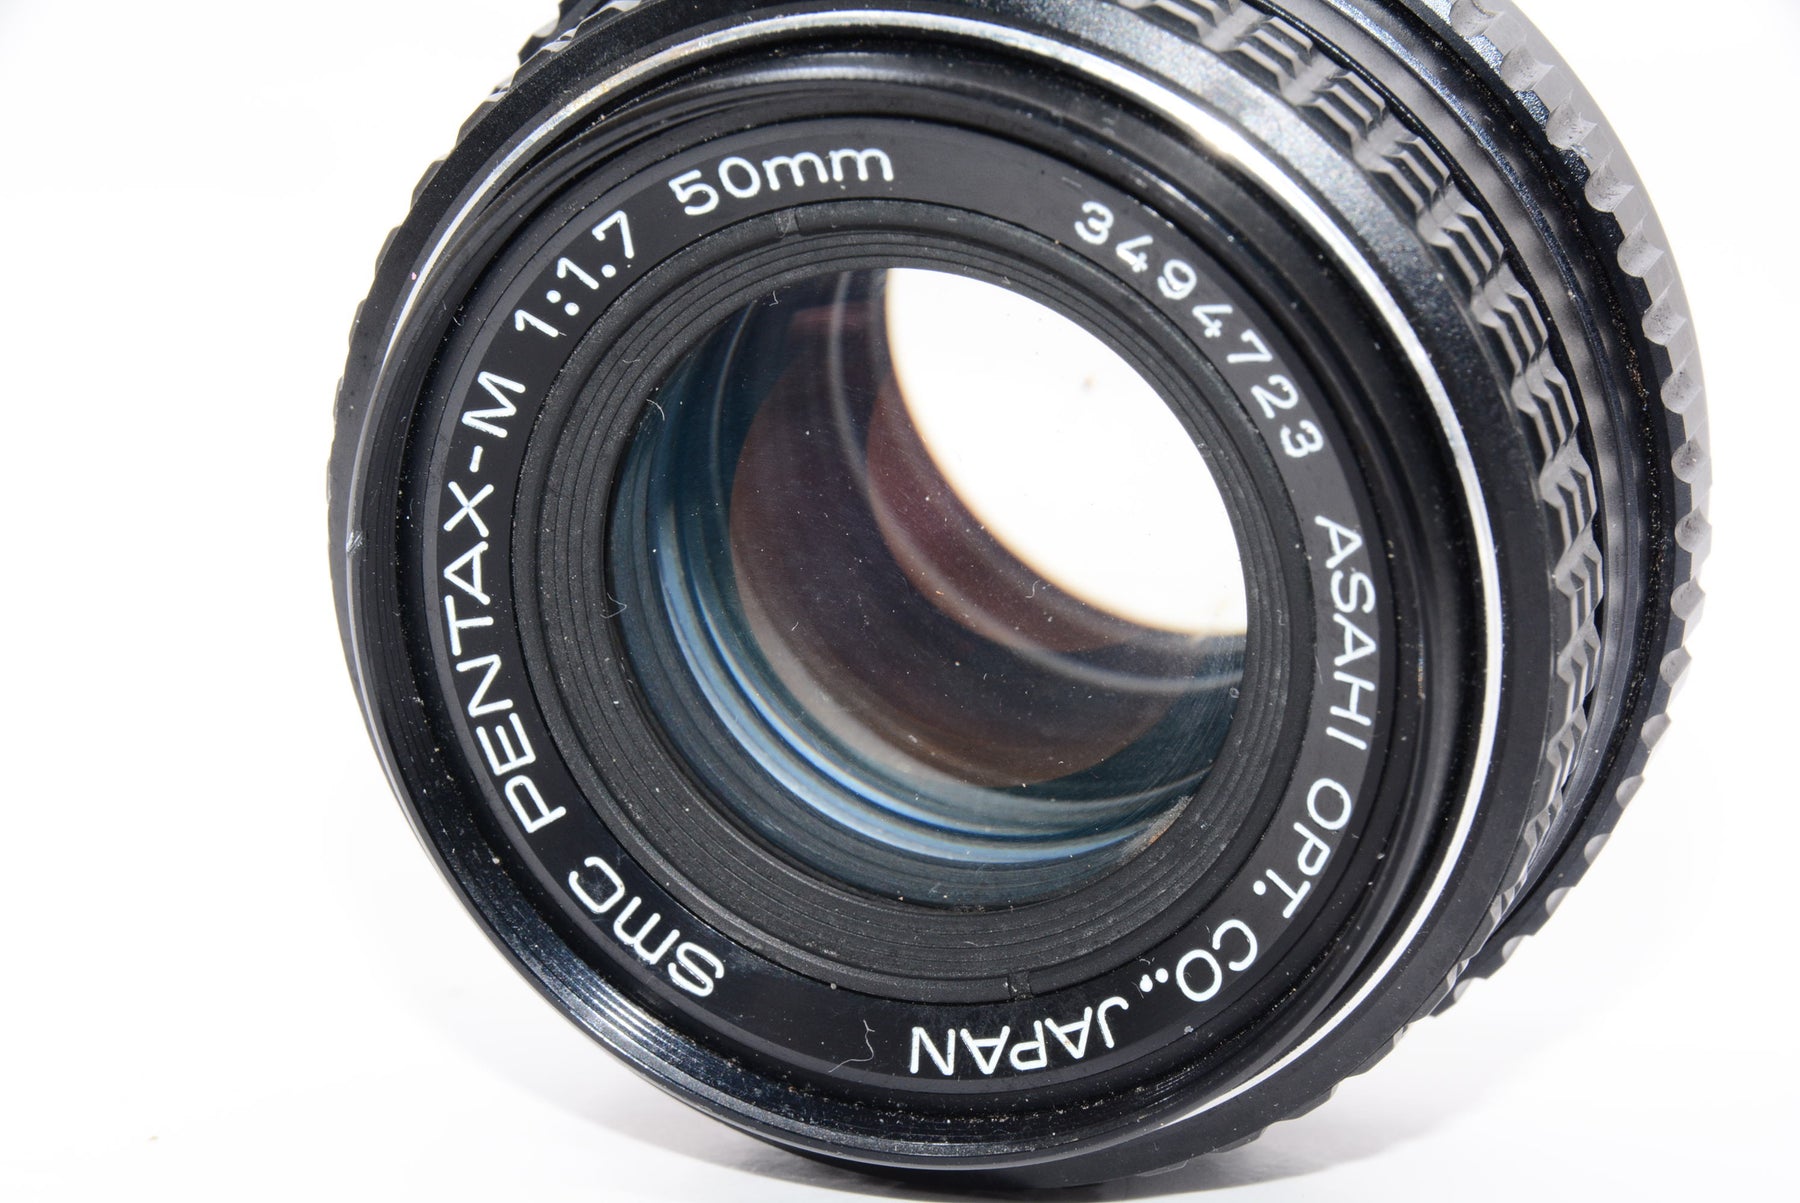 【外観並級】PENTAX SMC M 50 mm F1.7